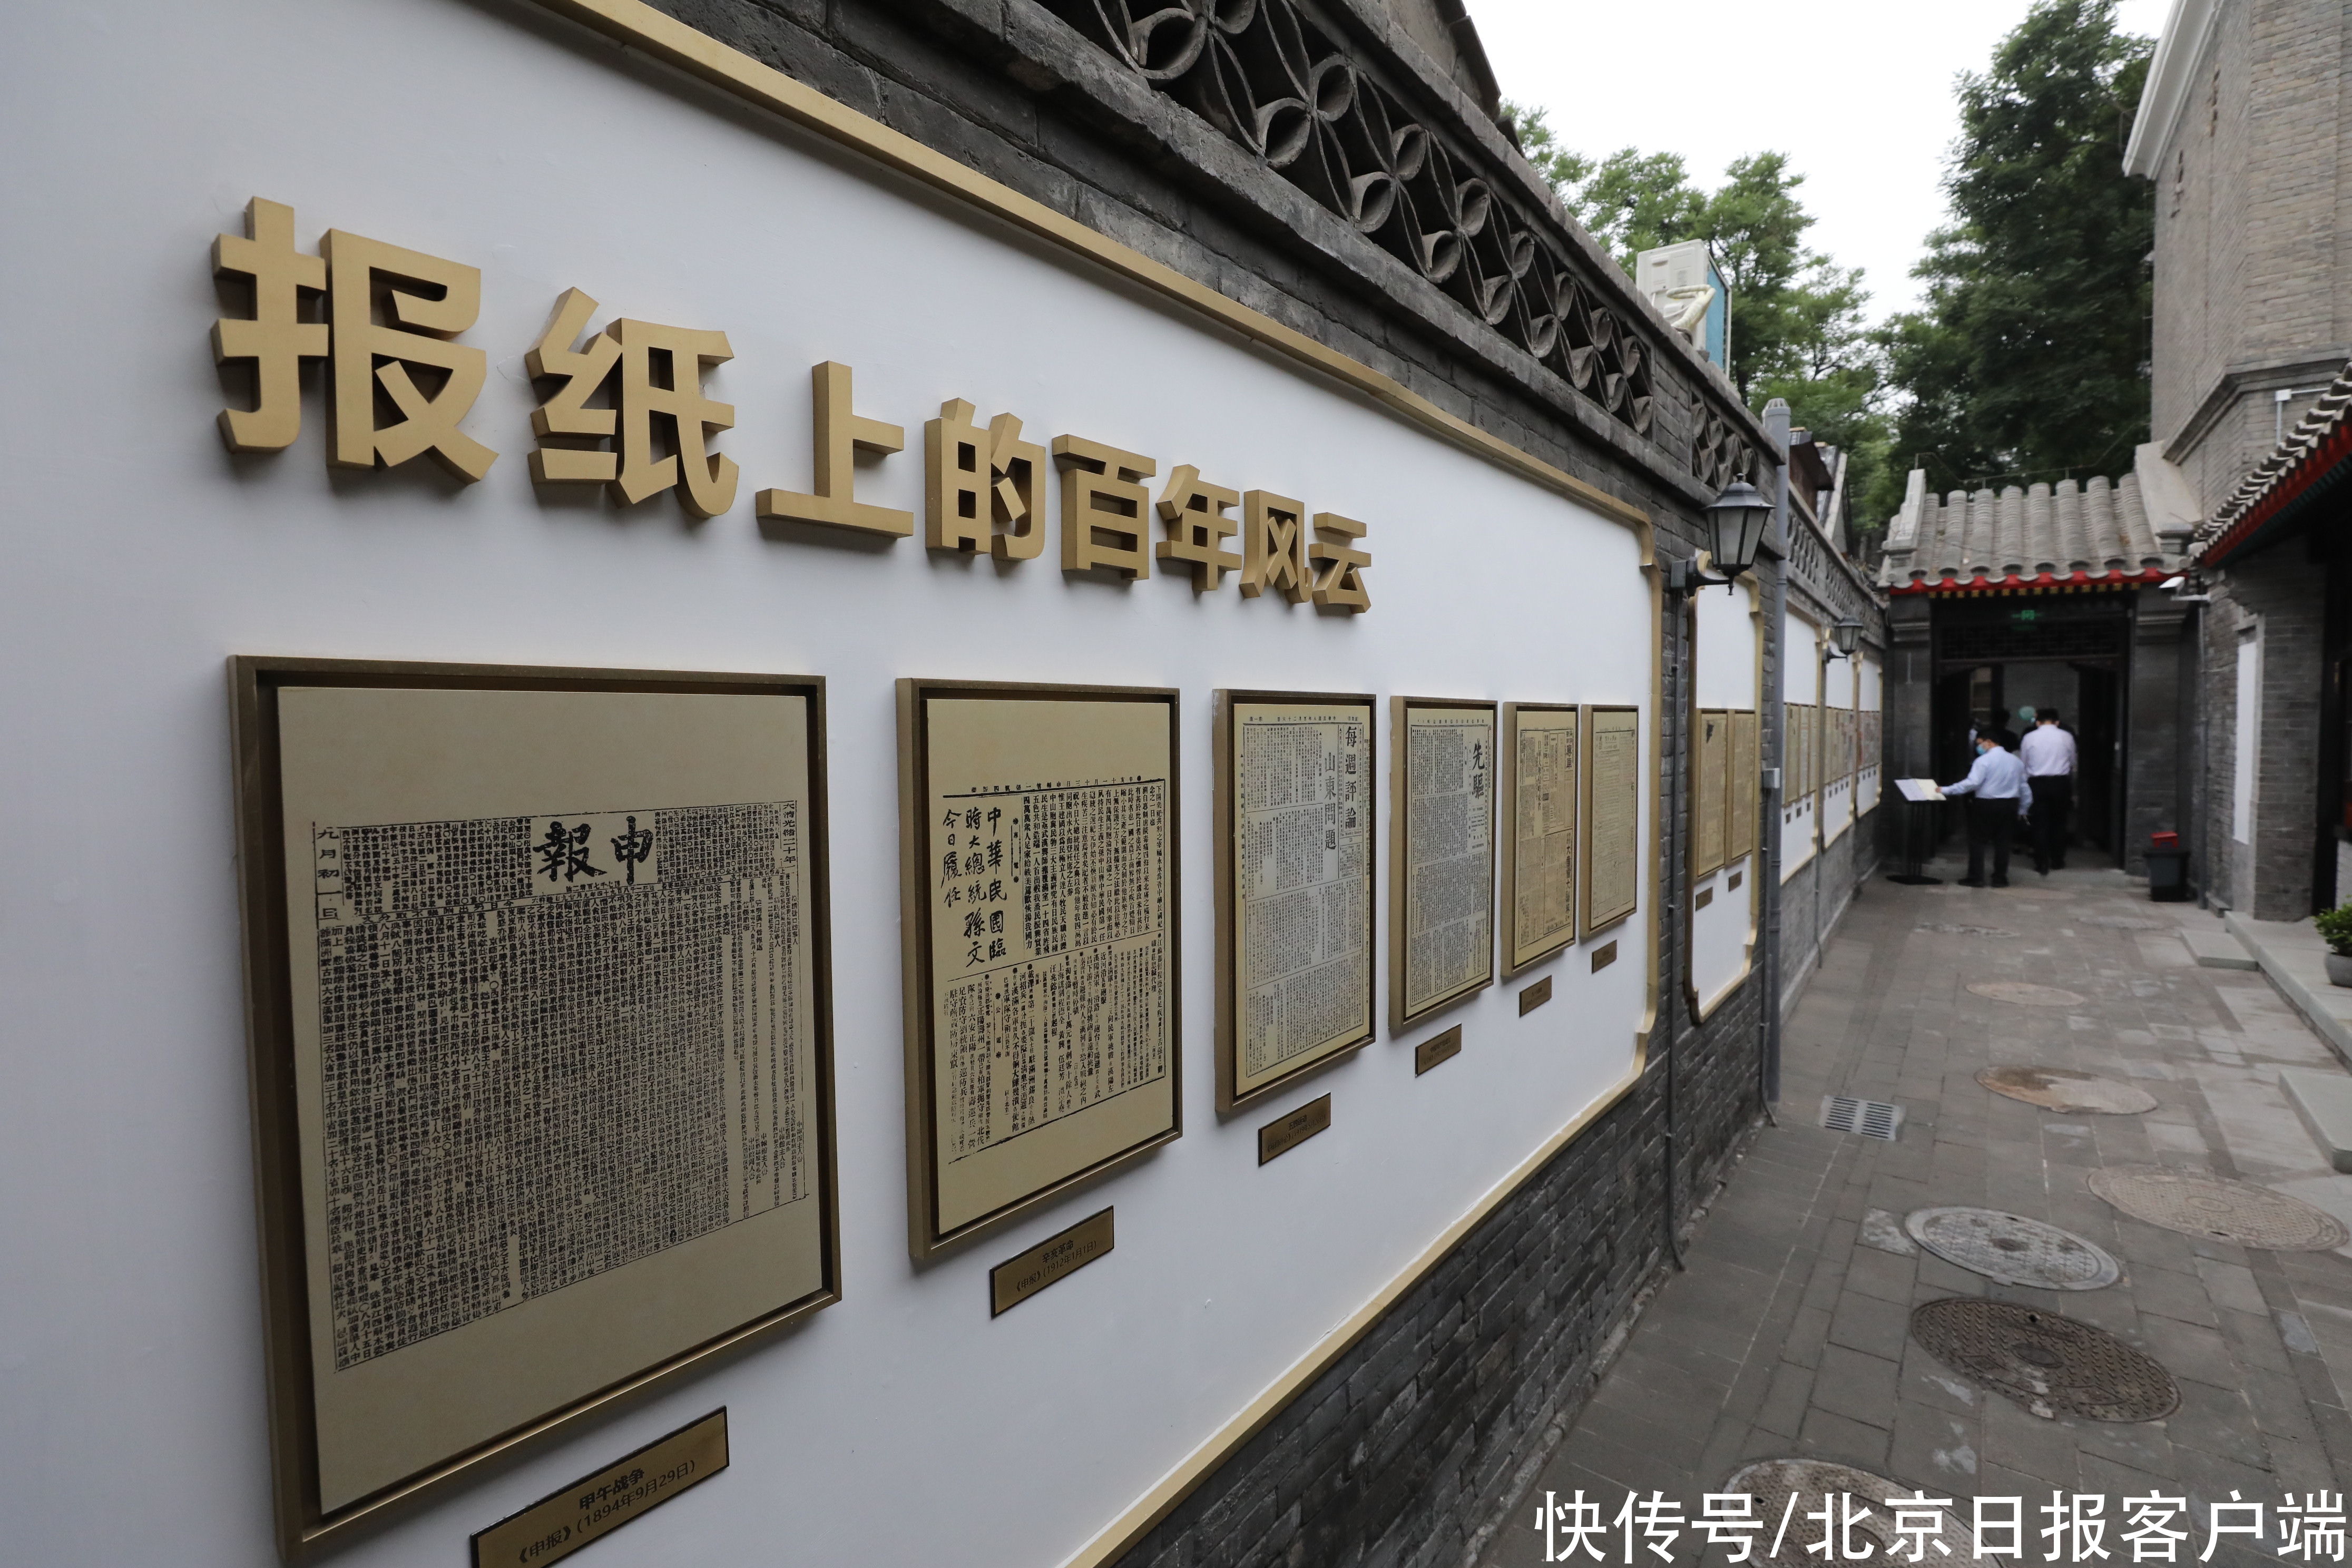 旧址|京报馆旧址修缮后首次与公众见面，一份“京报”诠释邵飘萍传奇一生